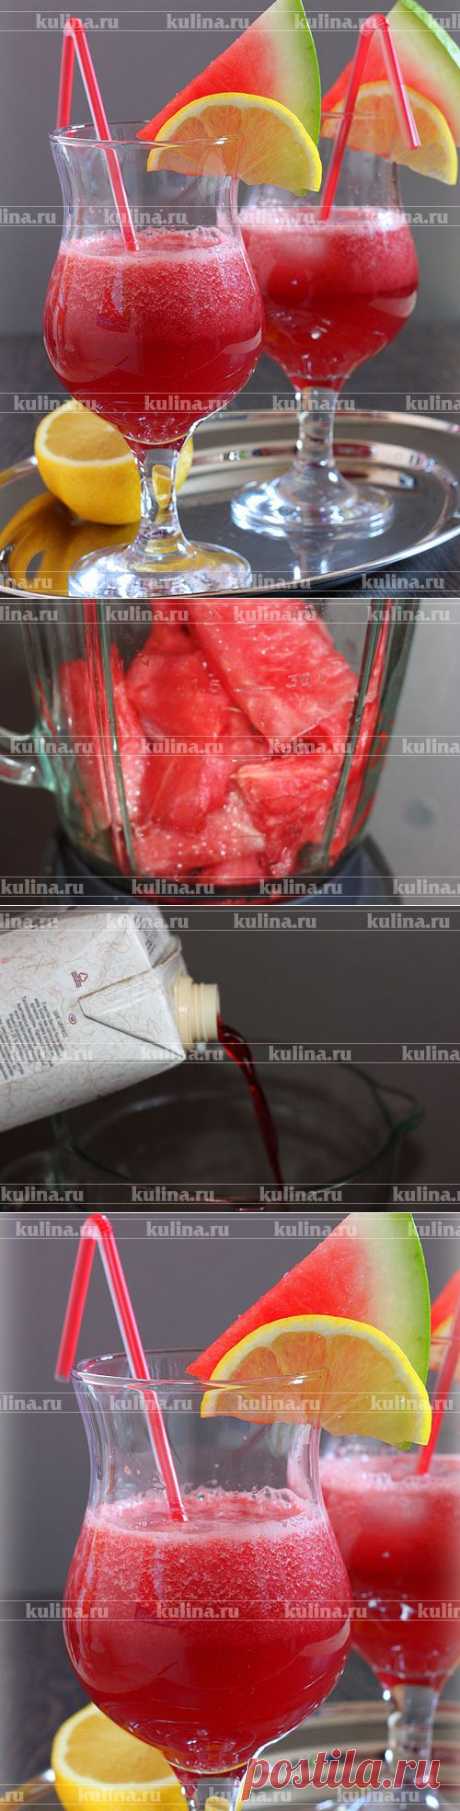 Коктейль из арбуза с соком – рецепт приготовления с фото от Kulina.Ru